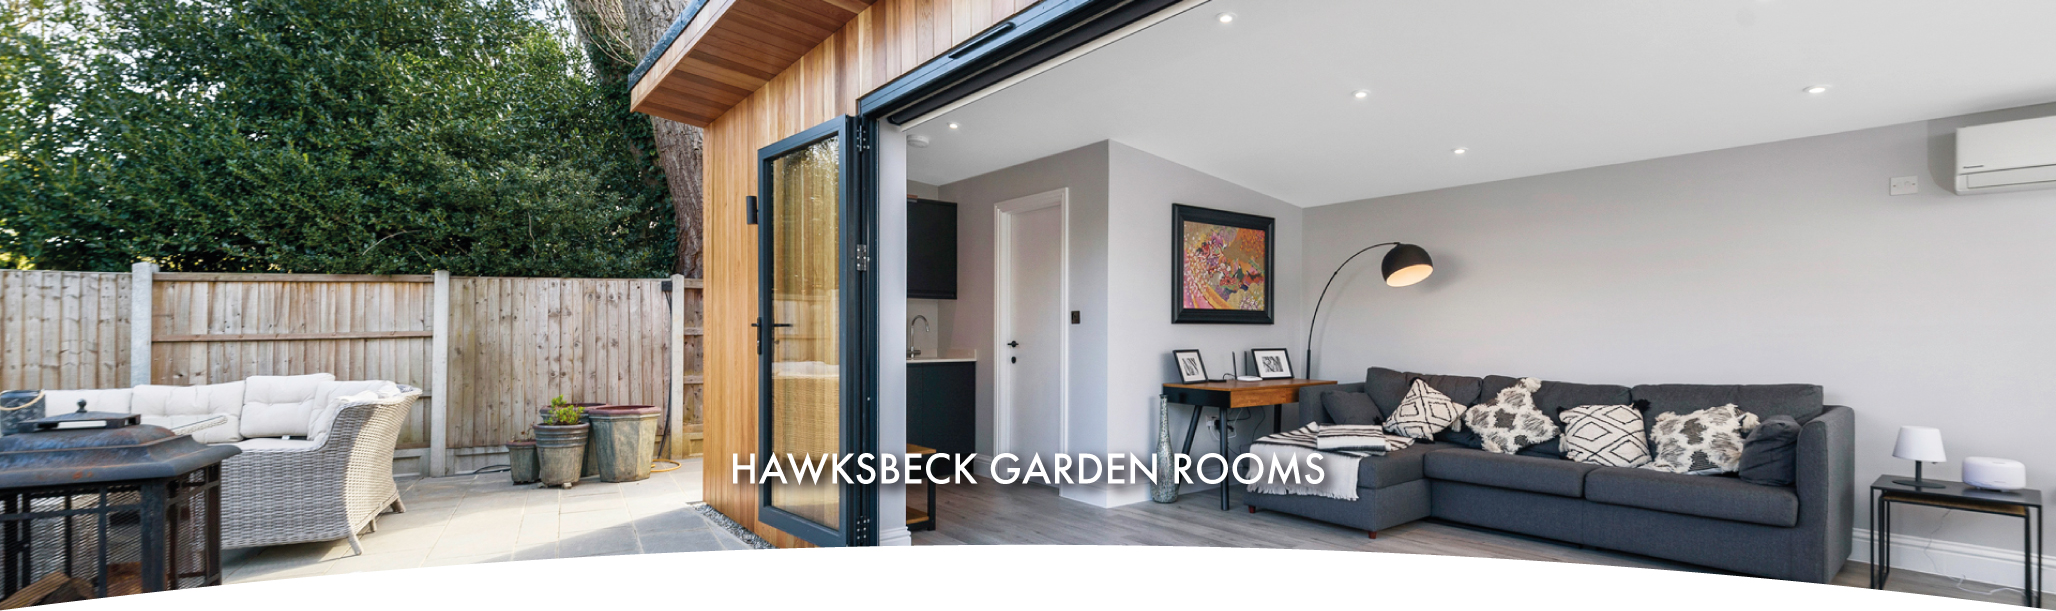 Bespoke luxury Essex garden rooms